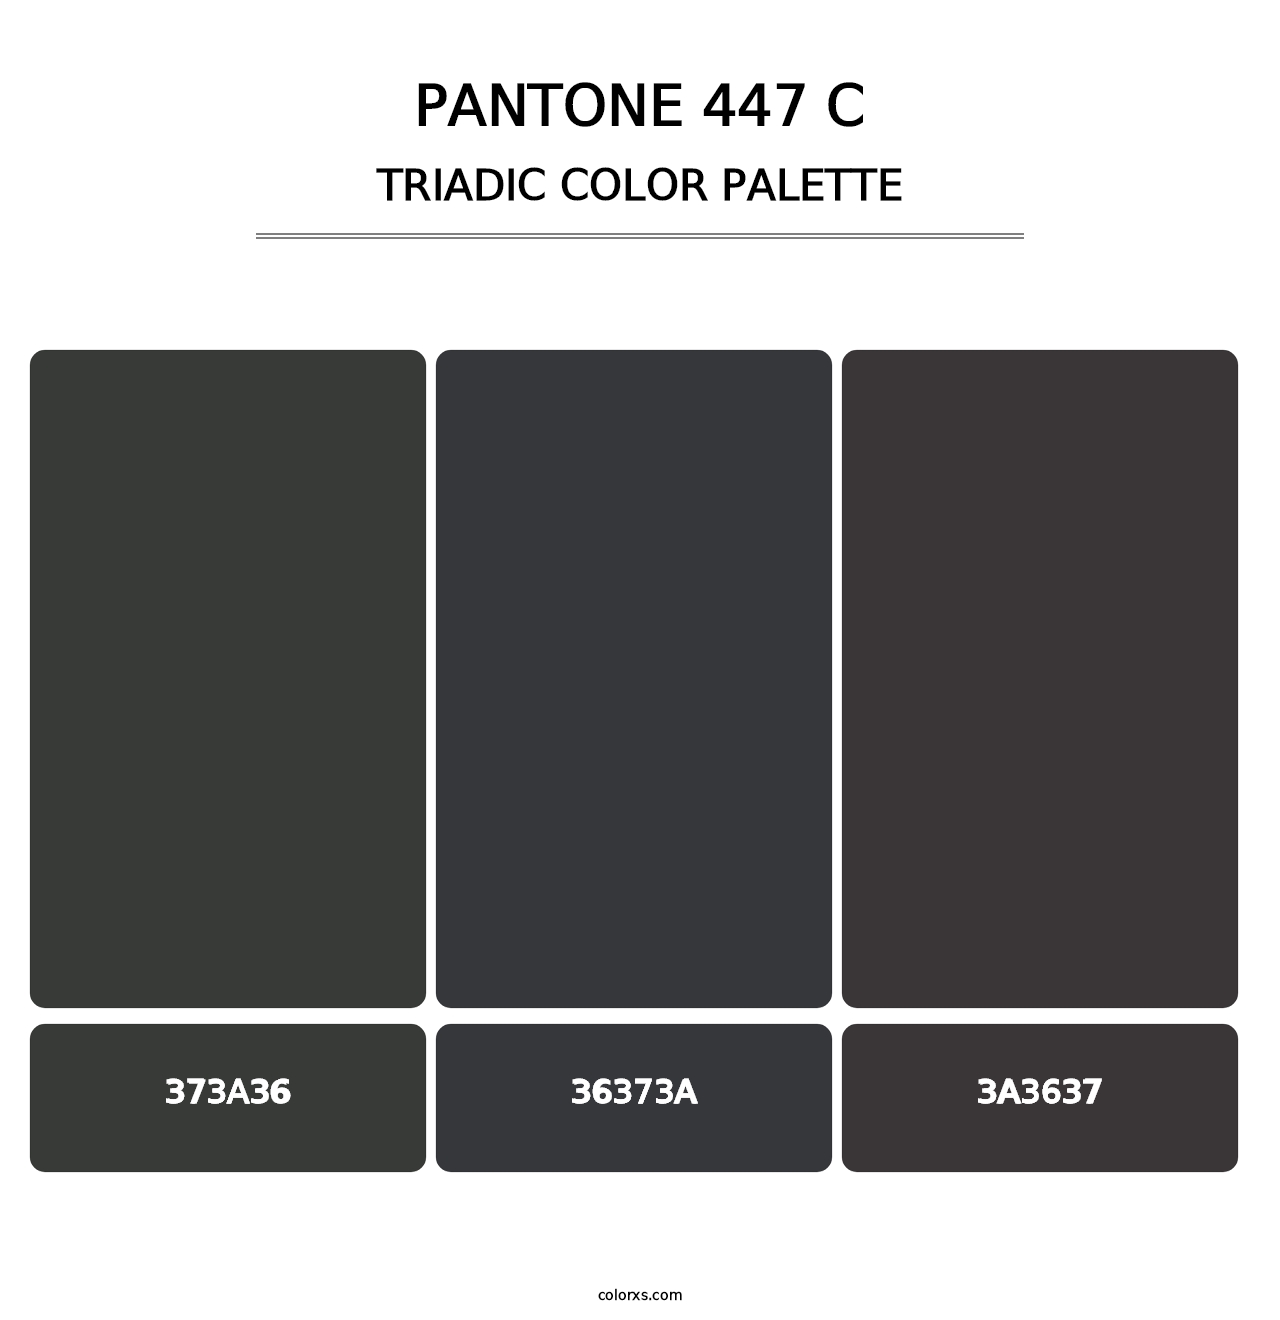 PANTONE 447 C - Triadic Color Palette